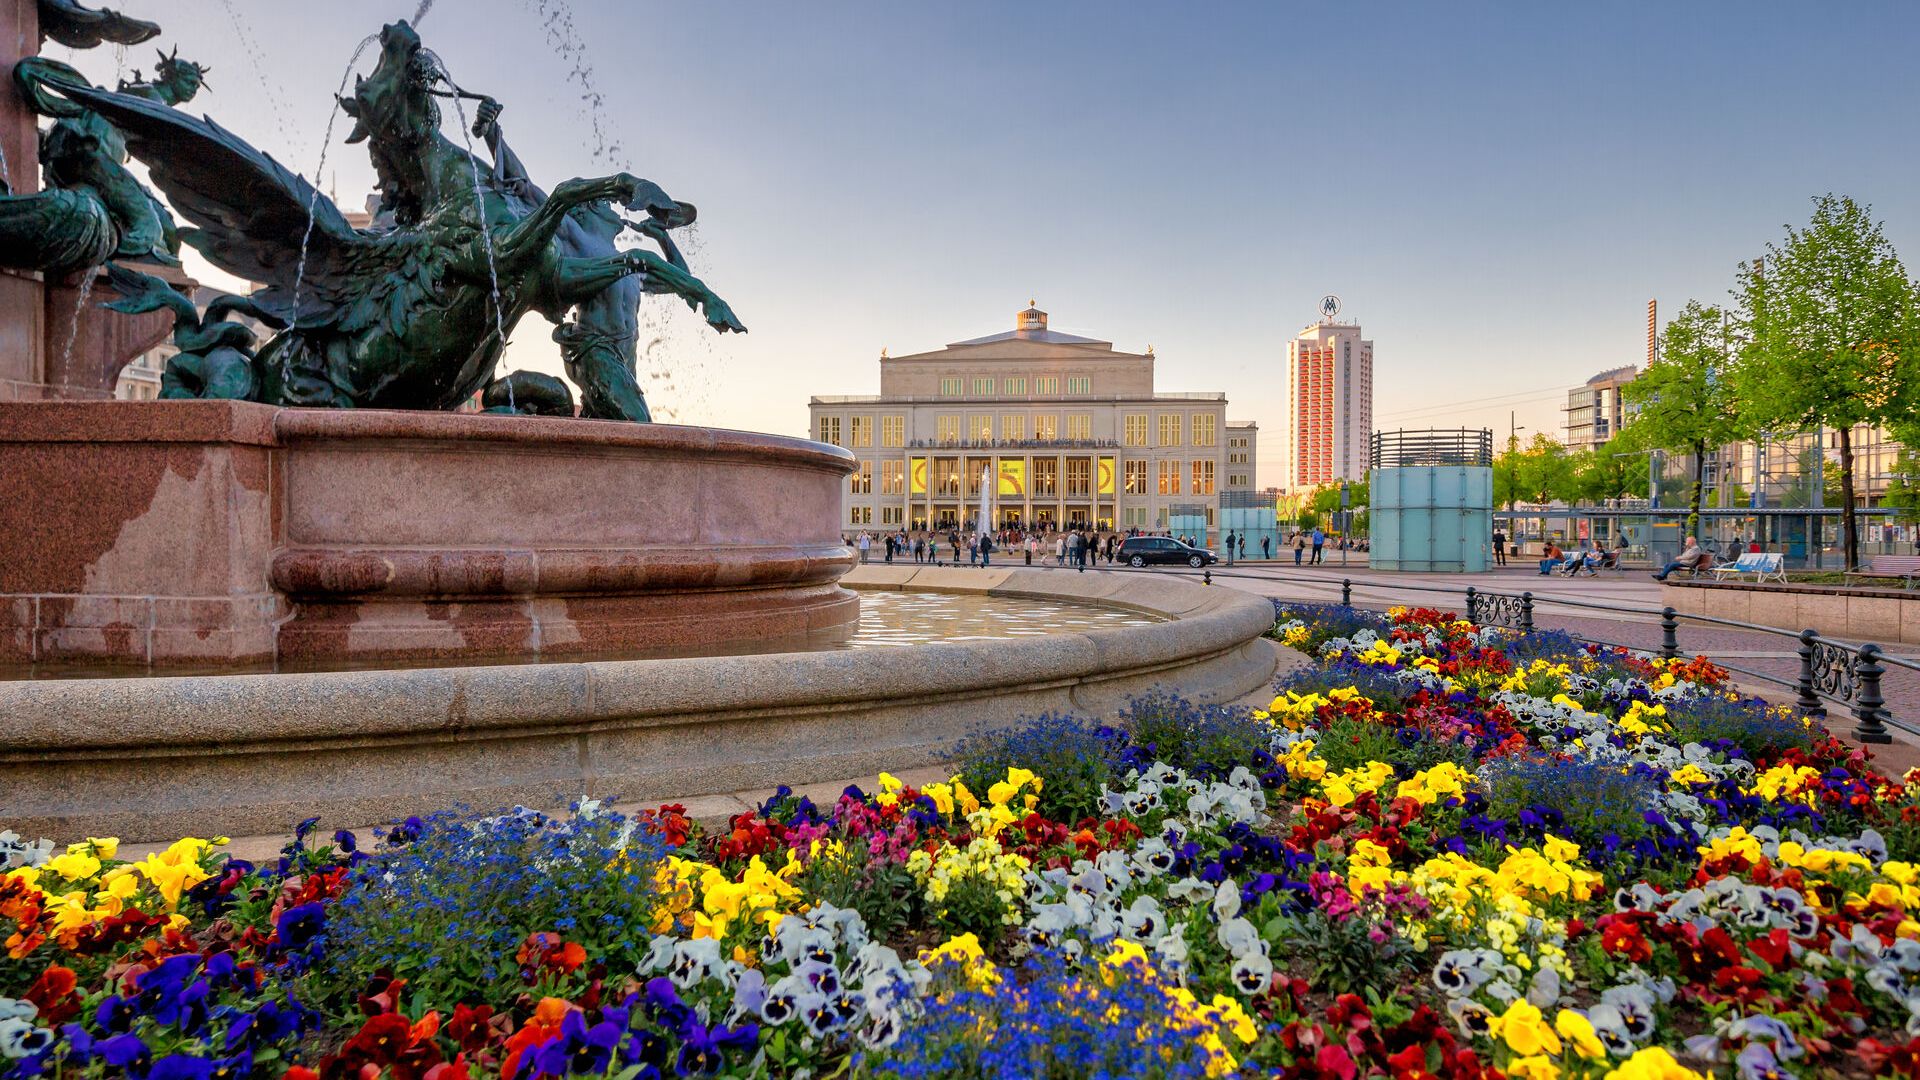 Auf dem Augustusplatz werden im Frühling um den Mendelbrunnen herum Blumen gepflanzt, Frühling in Leipzig, Sehenswürdigkeiten